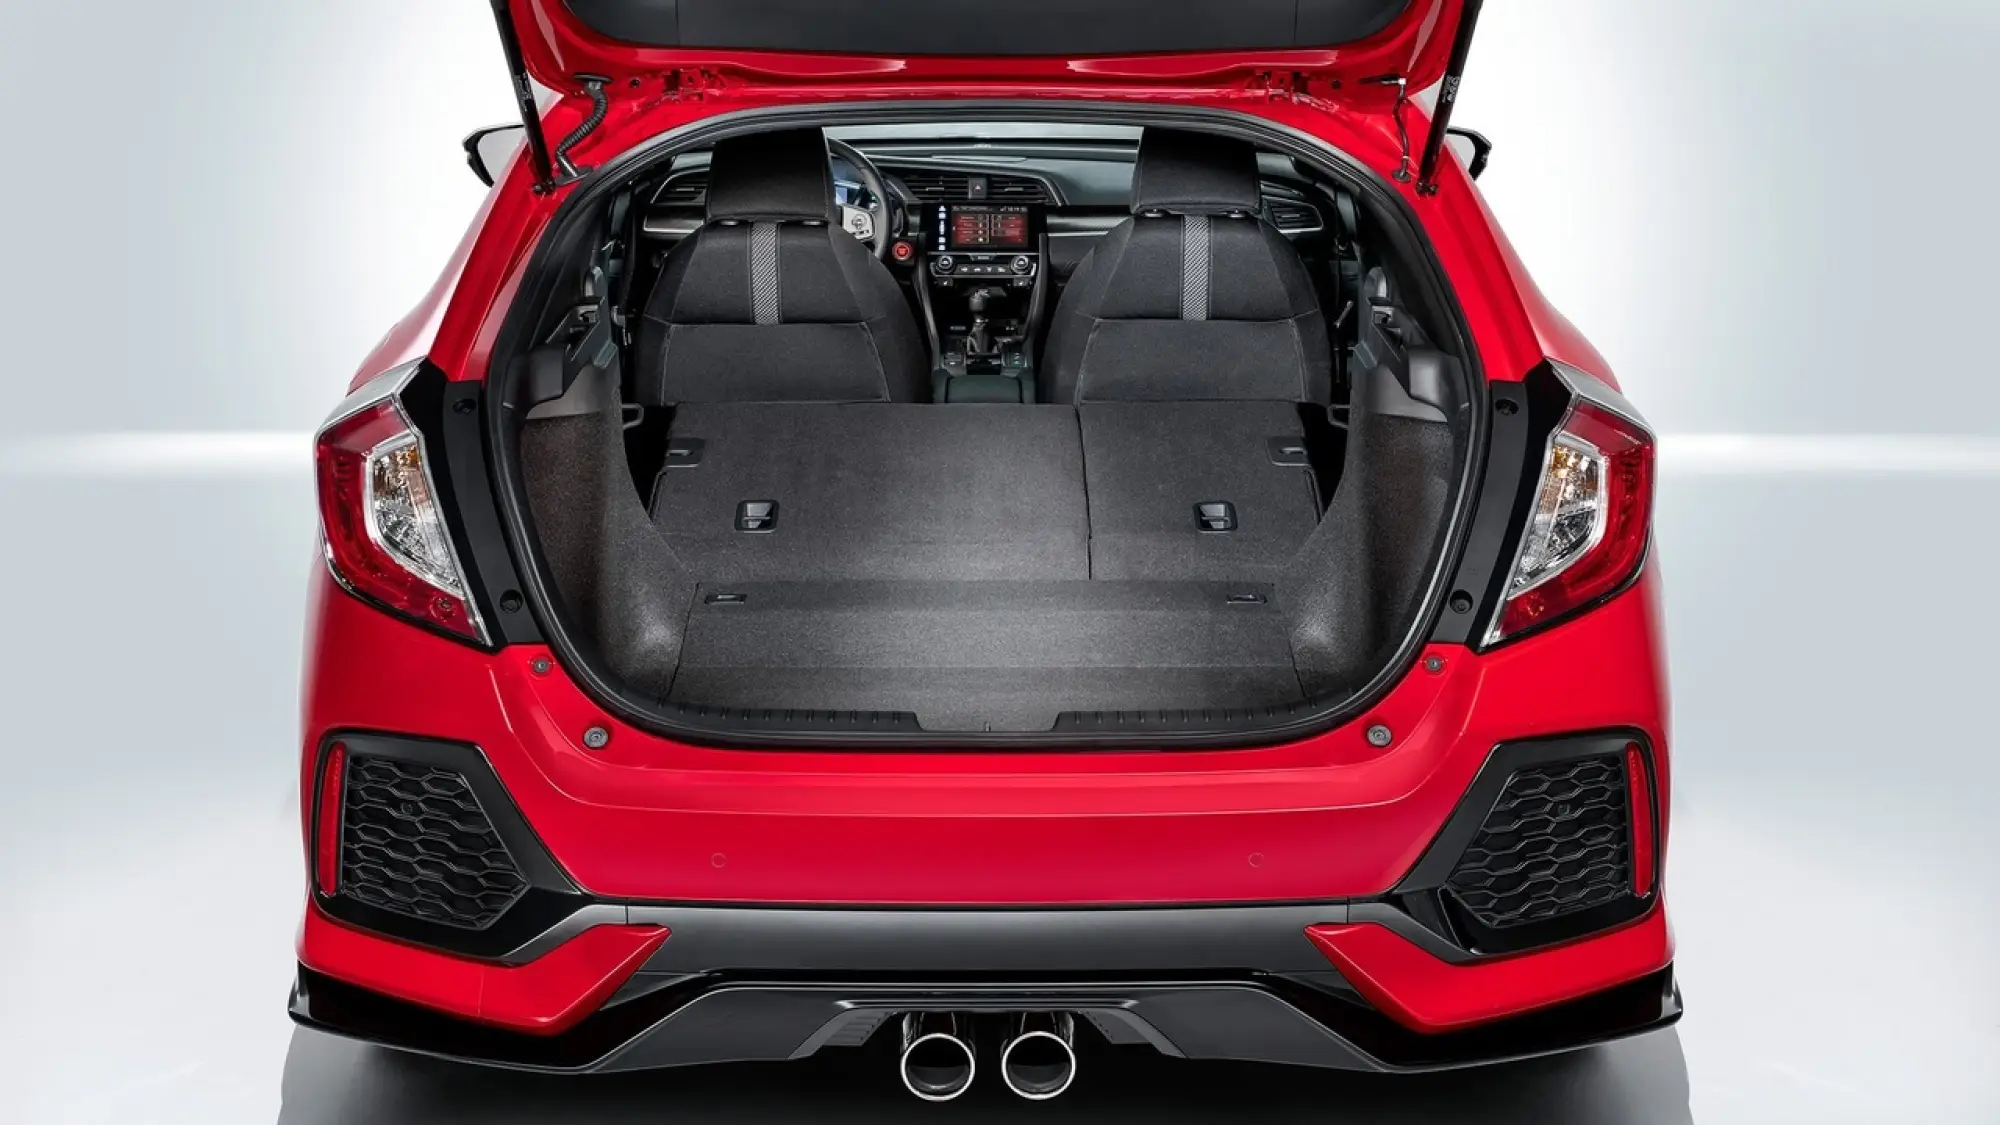 Nuova Honda Civic Hatchback prime foto ufficiali 16 settembre 2016 - 9